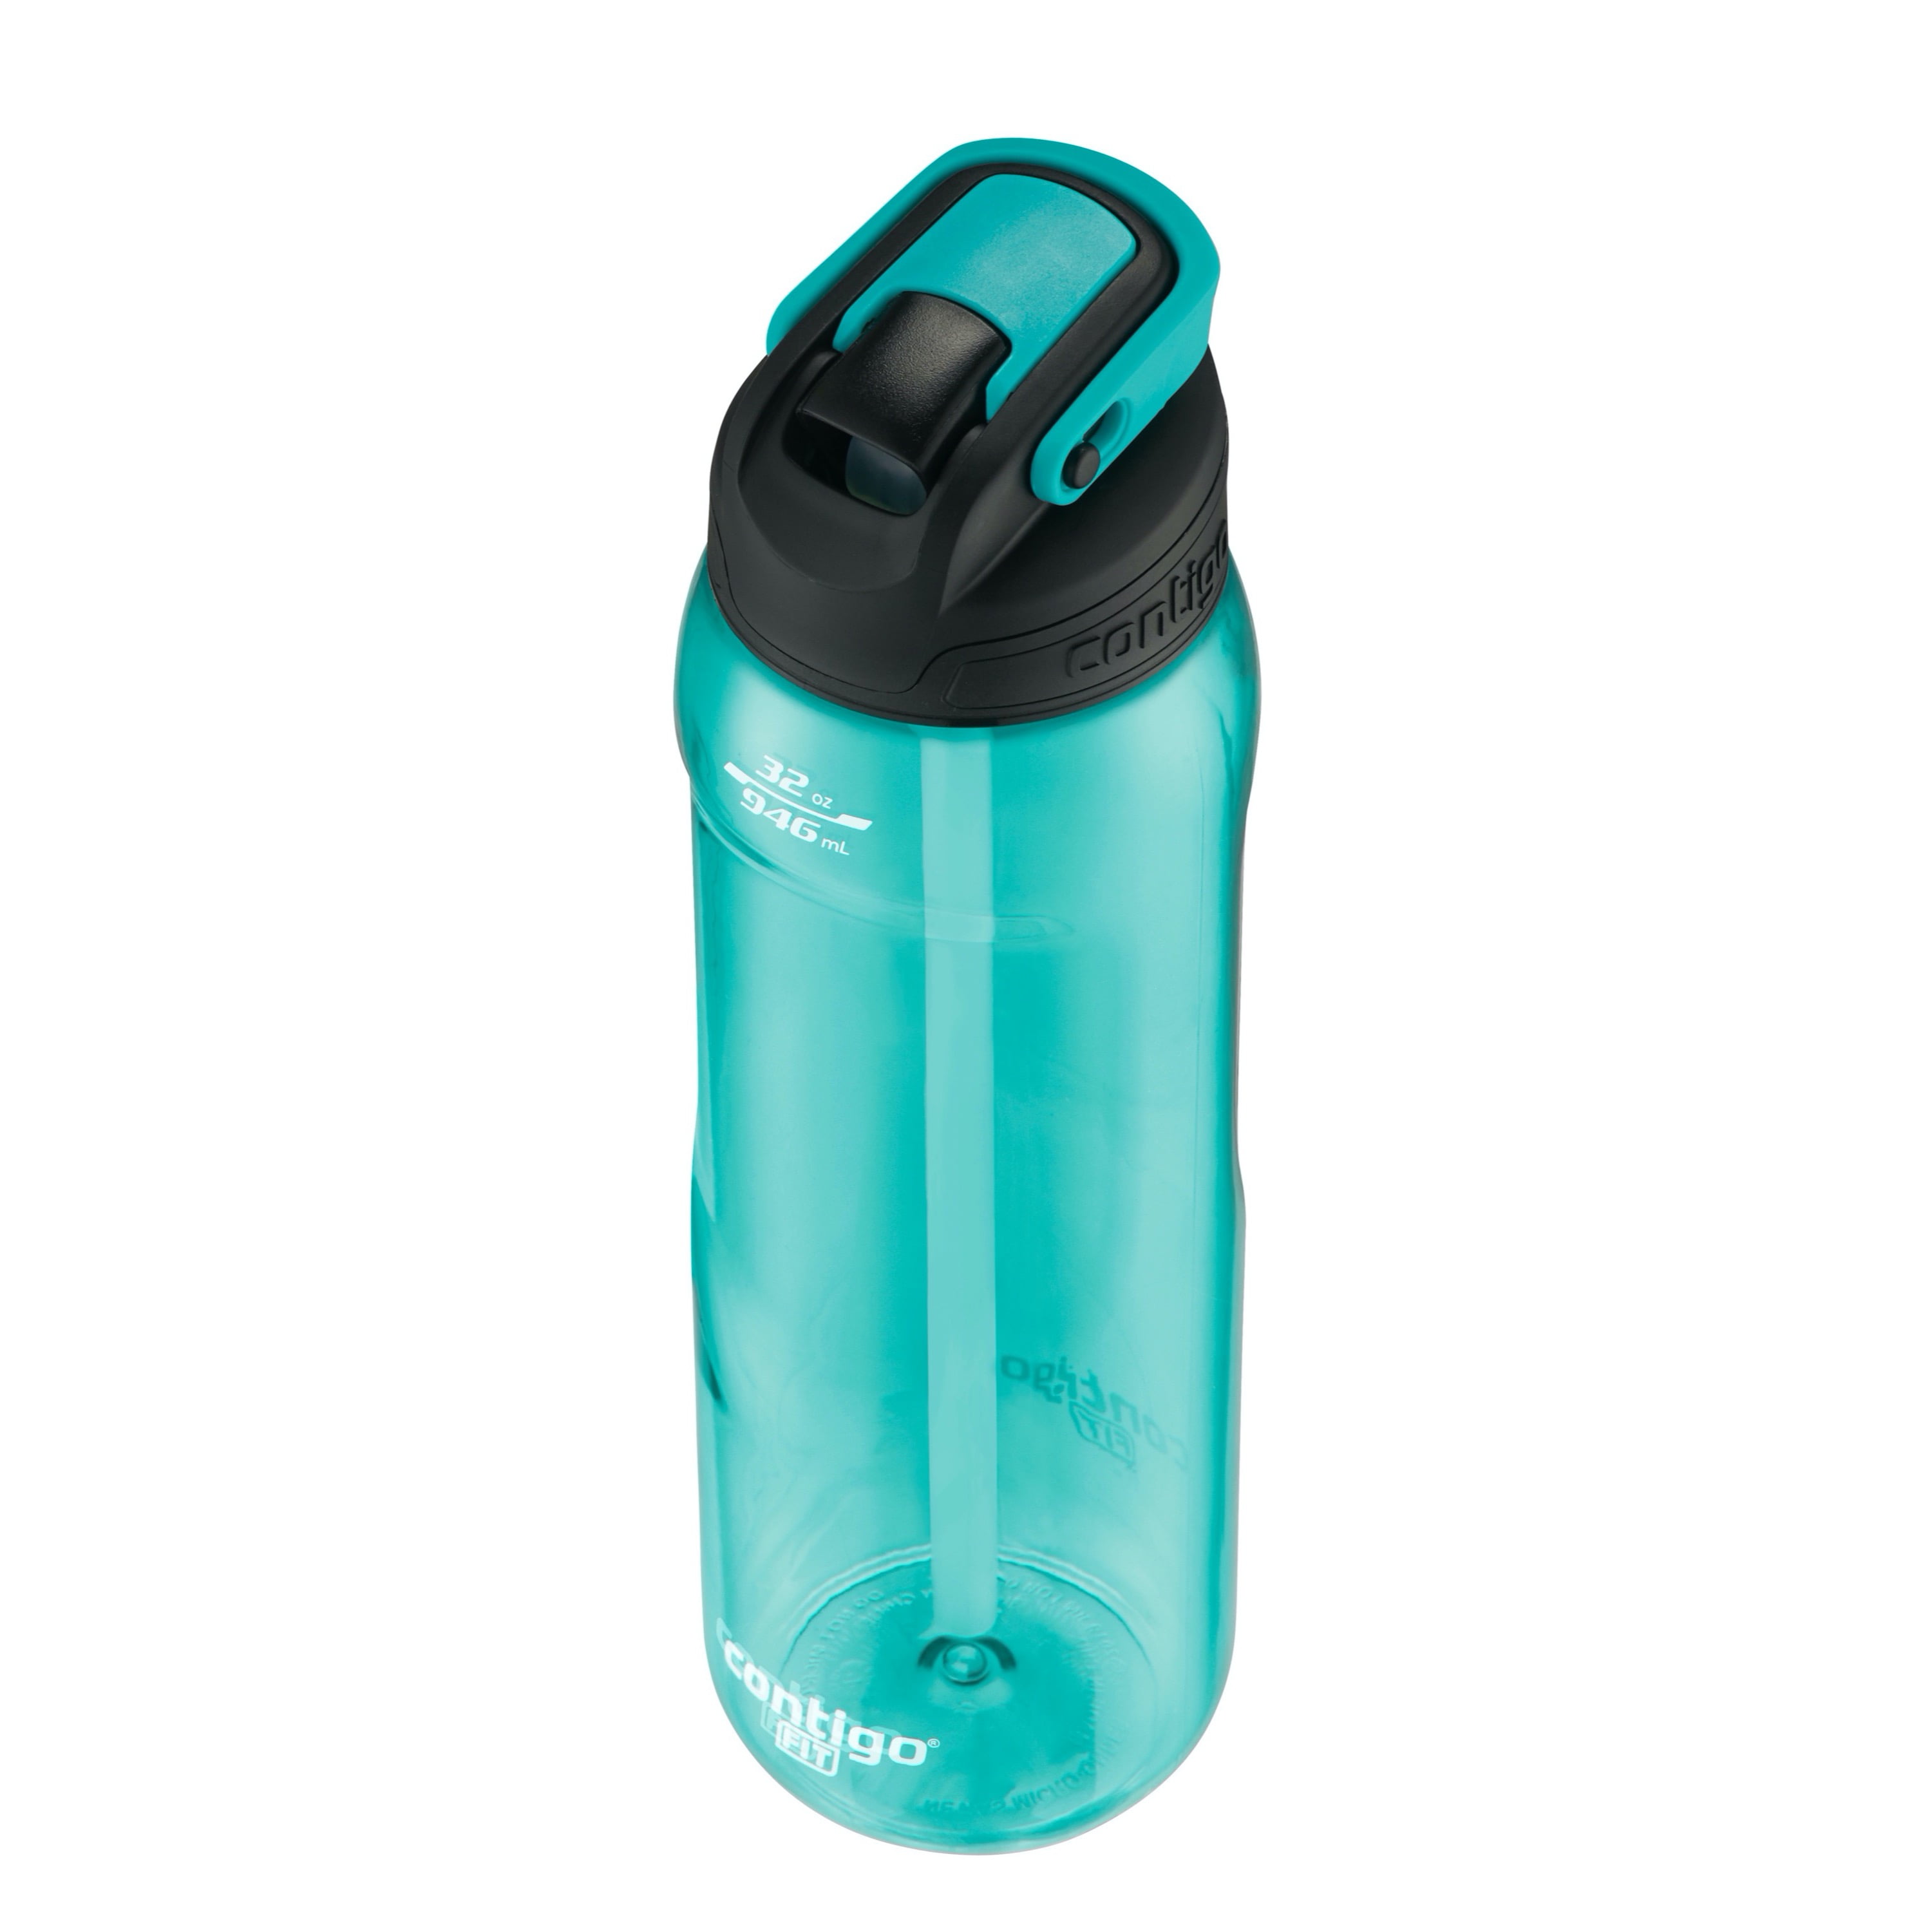 Contigo Fit Autoseal Surge Water Bottle, 32 oz - Pay Less Super